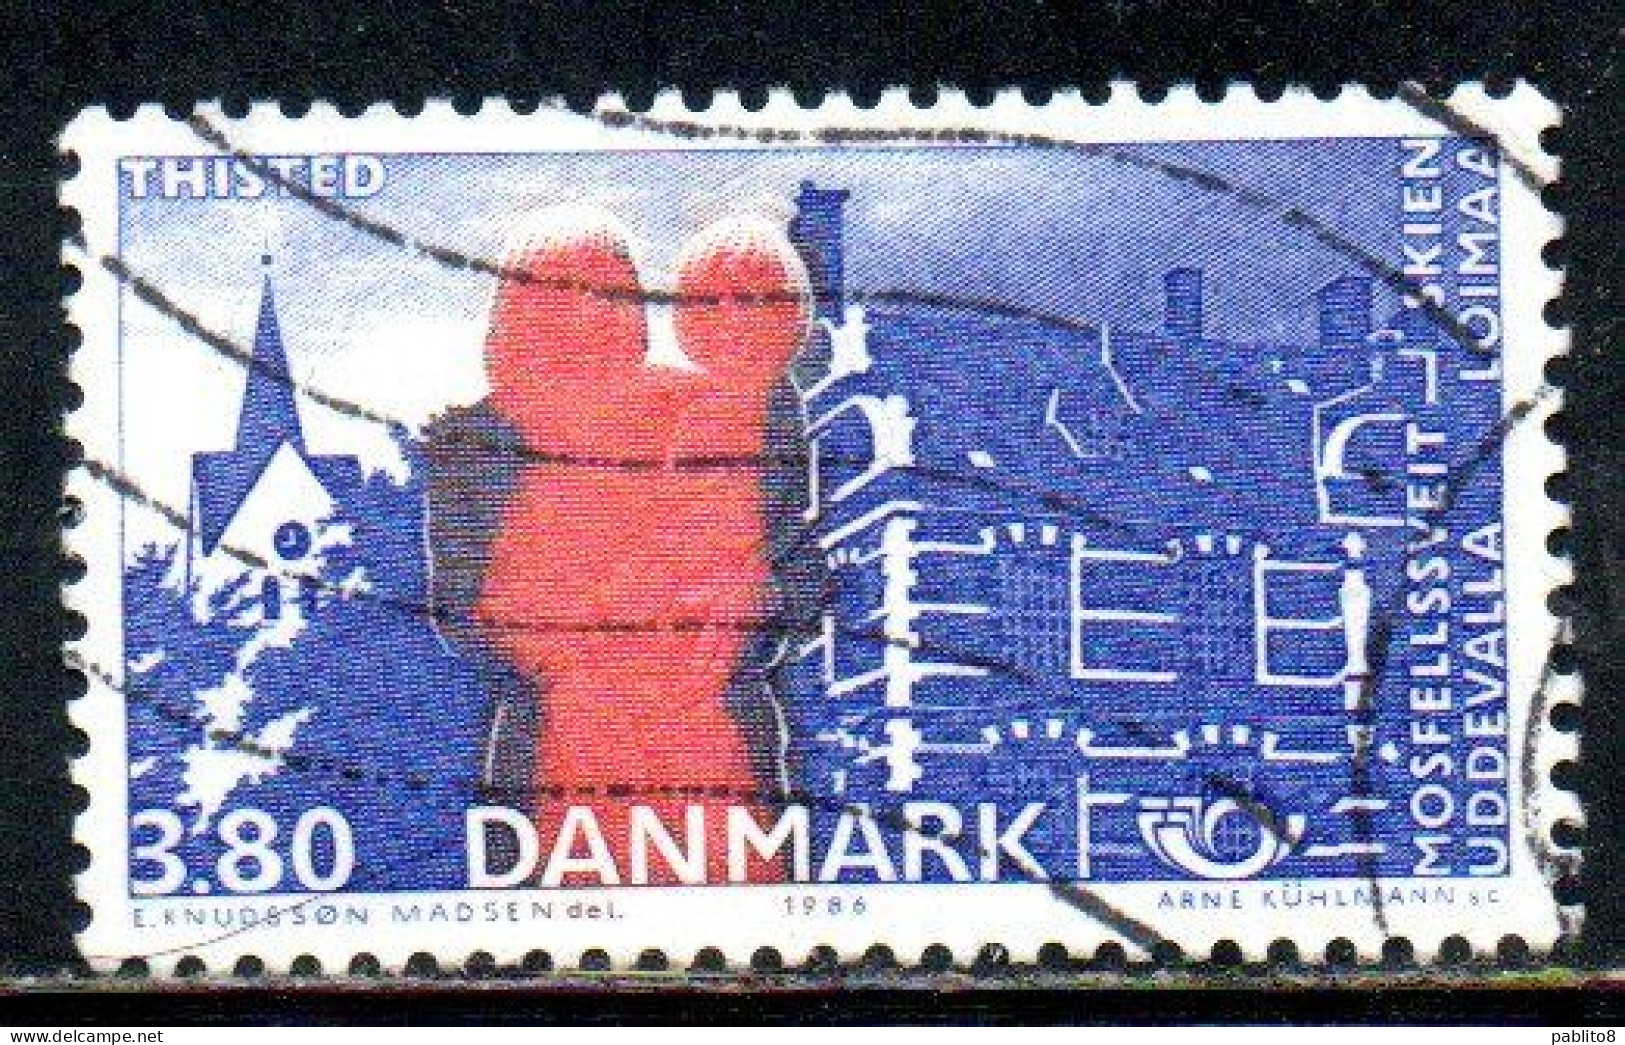 DANEMARK DANMARK DENMARK DANIMARCA 1986 NORDIC COOPERATION ISSUE THISTED CHURCH HARBOR 3.80k USED USATO OBLITERE' - Gebraucht